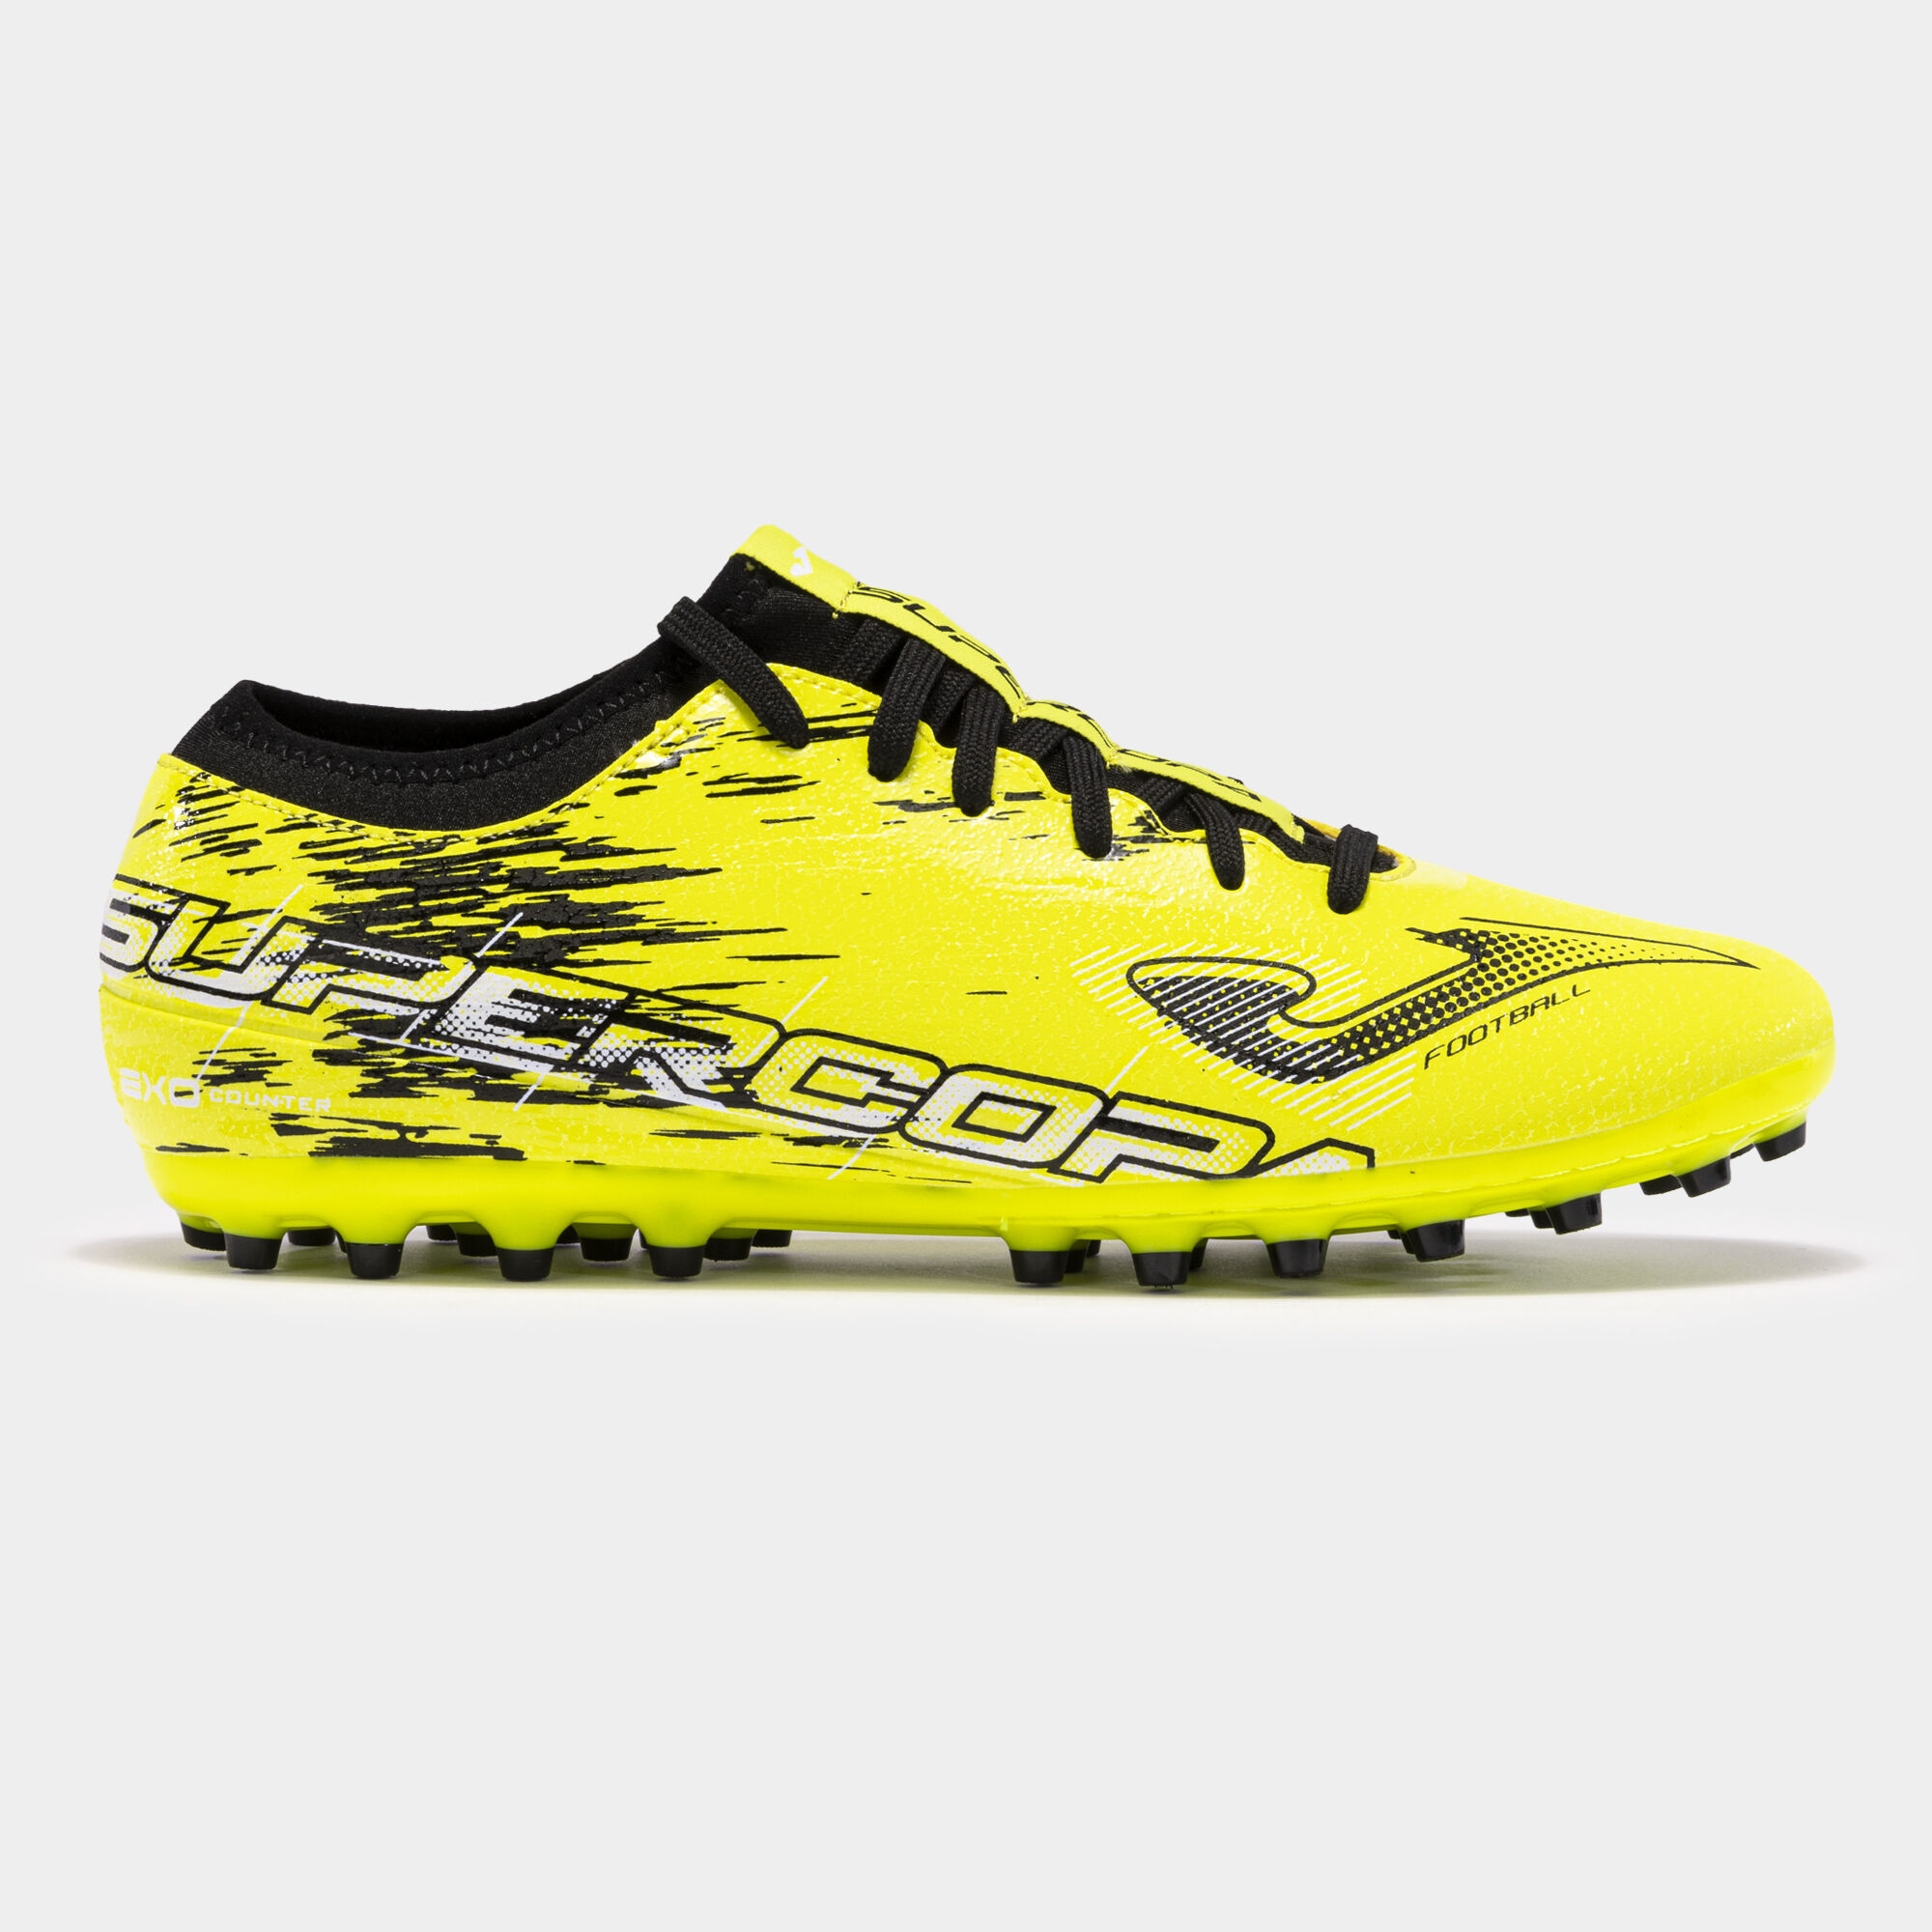 Football boots Supercopa 23 artificial grass fluorescent yellow black